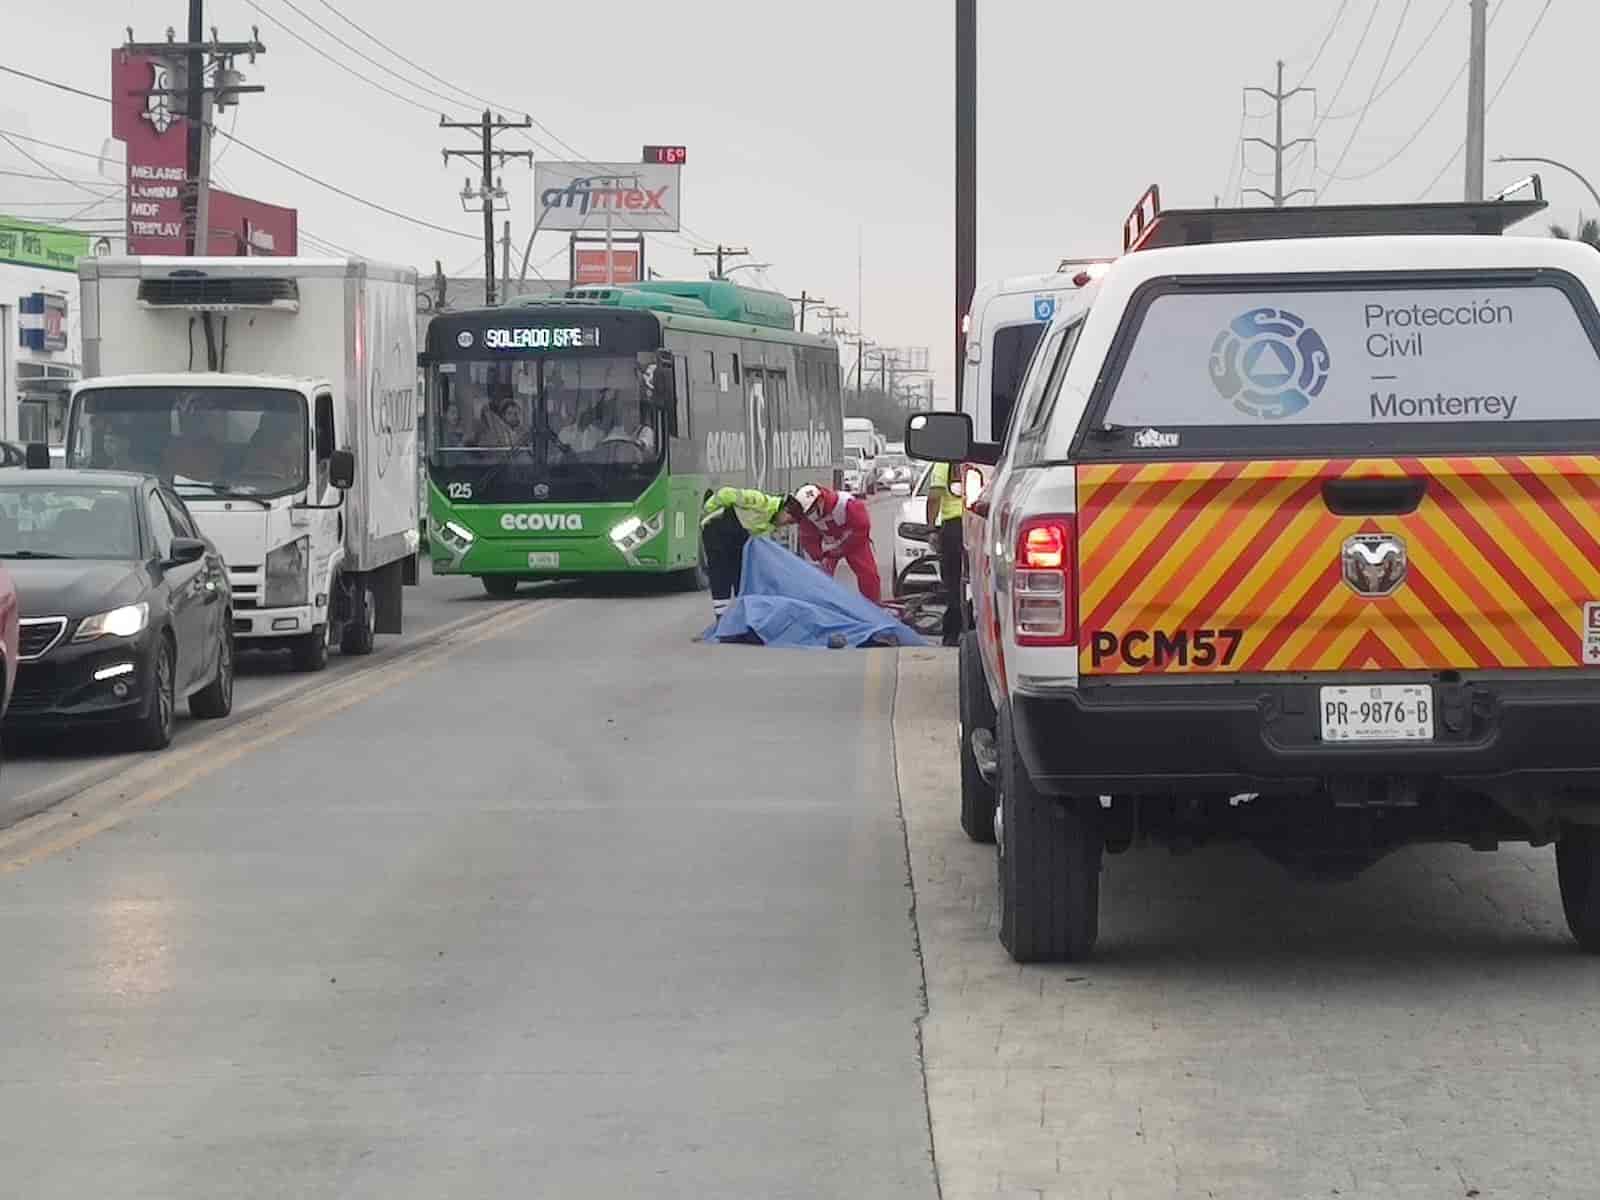 Las autoridades investigan la muerte de un hombre, quien falleció al caer de la bicicleta en que viajaba, ayer en la Avenida Ruiz Cortines, Colonia Coyoacán, al oriente de Monterrey.